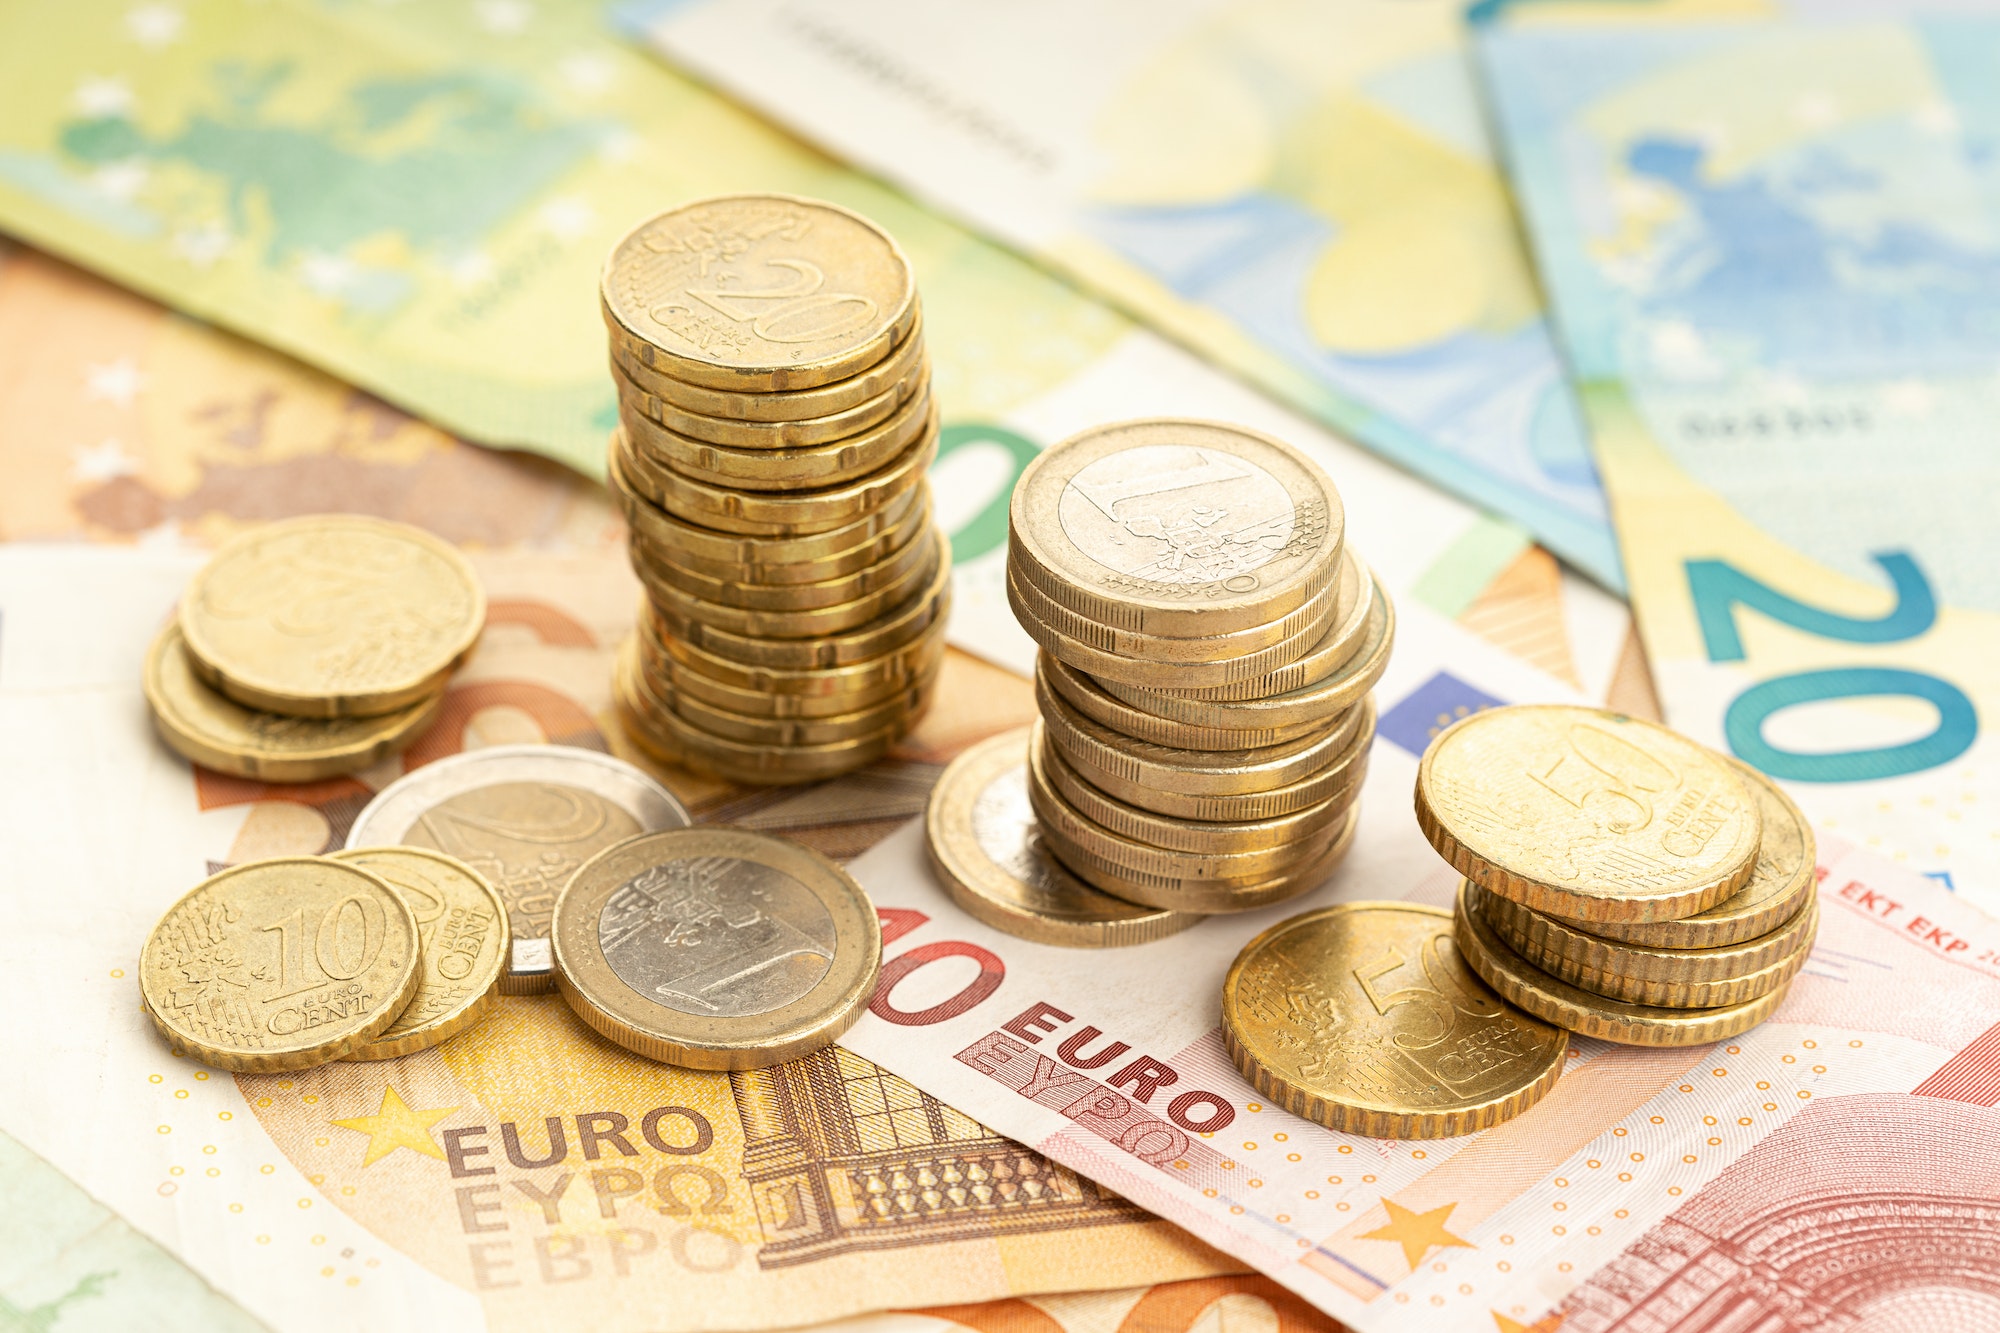 Euro-Münzen und Banknoten